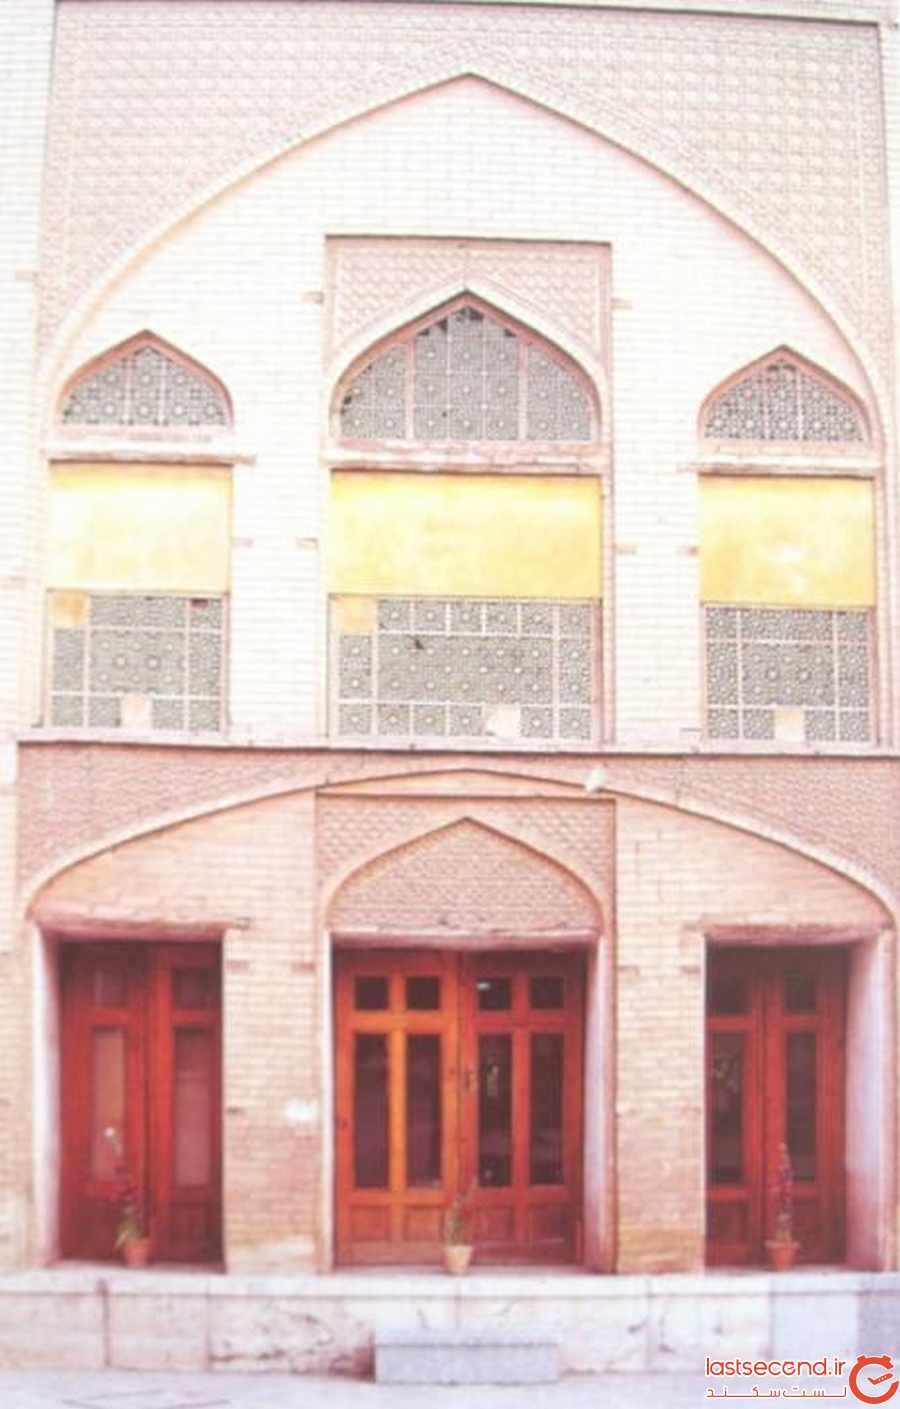 ‏ مارتاپیترز، خانه عهد صفوی در اصفهان